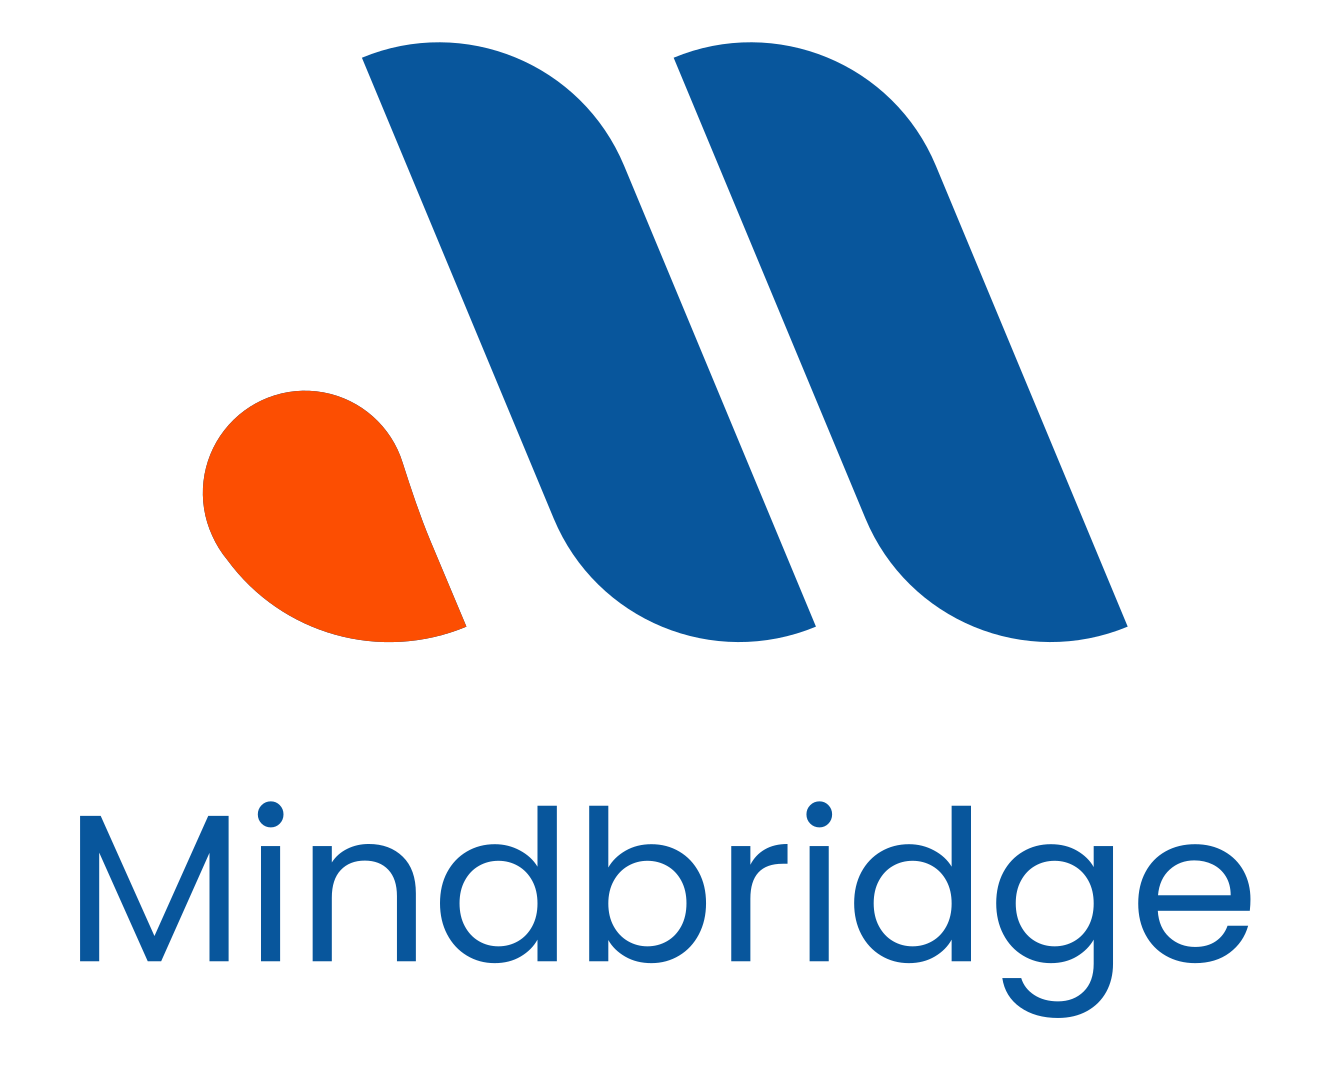 Mindbridge